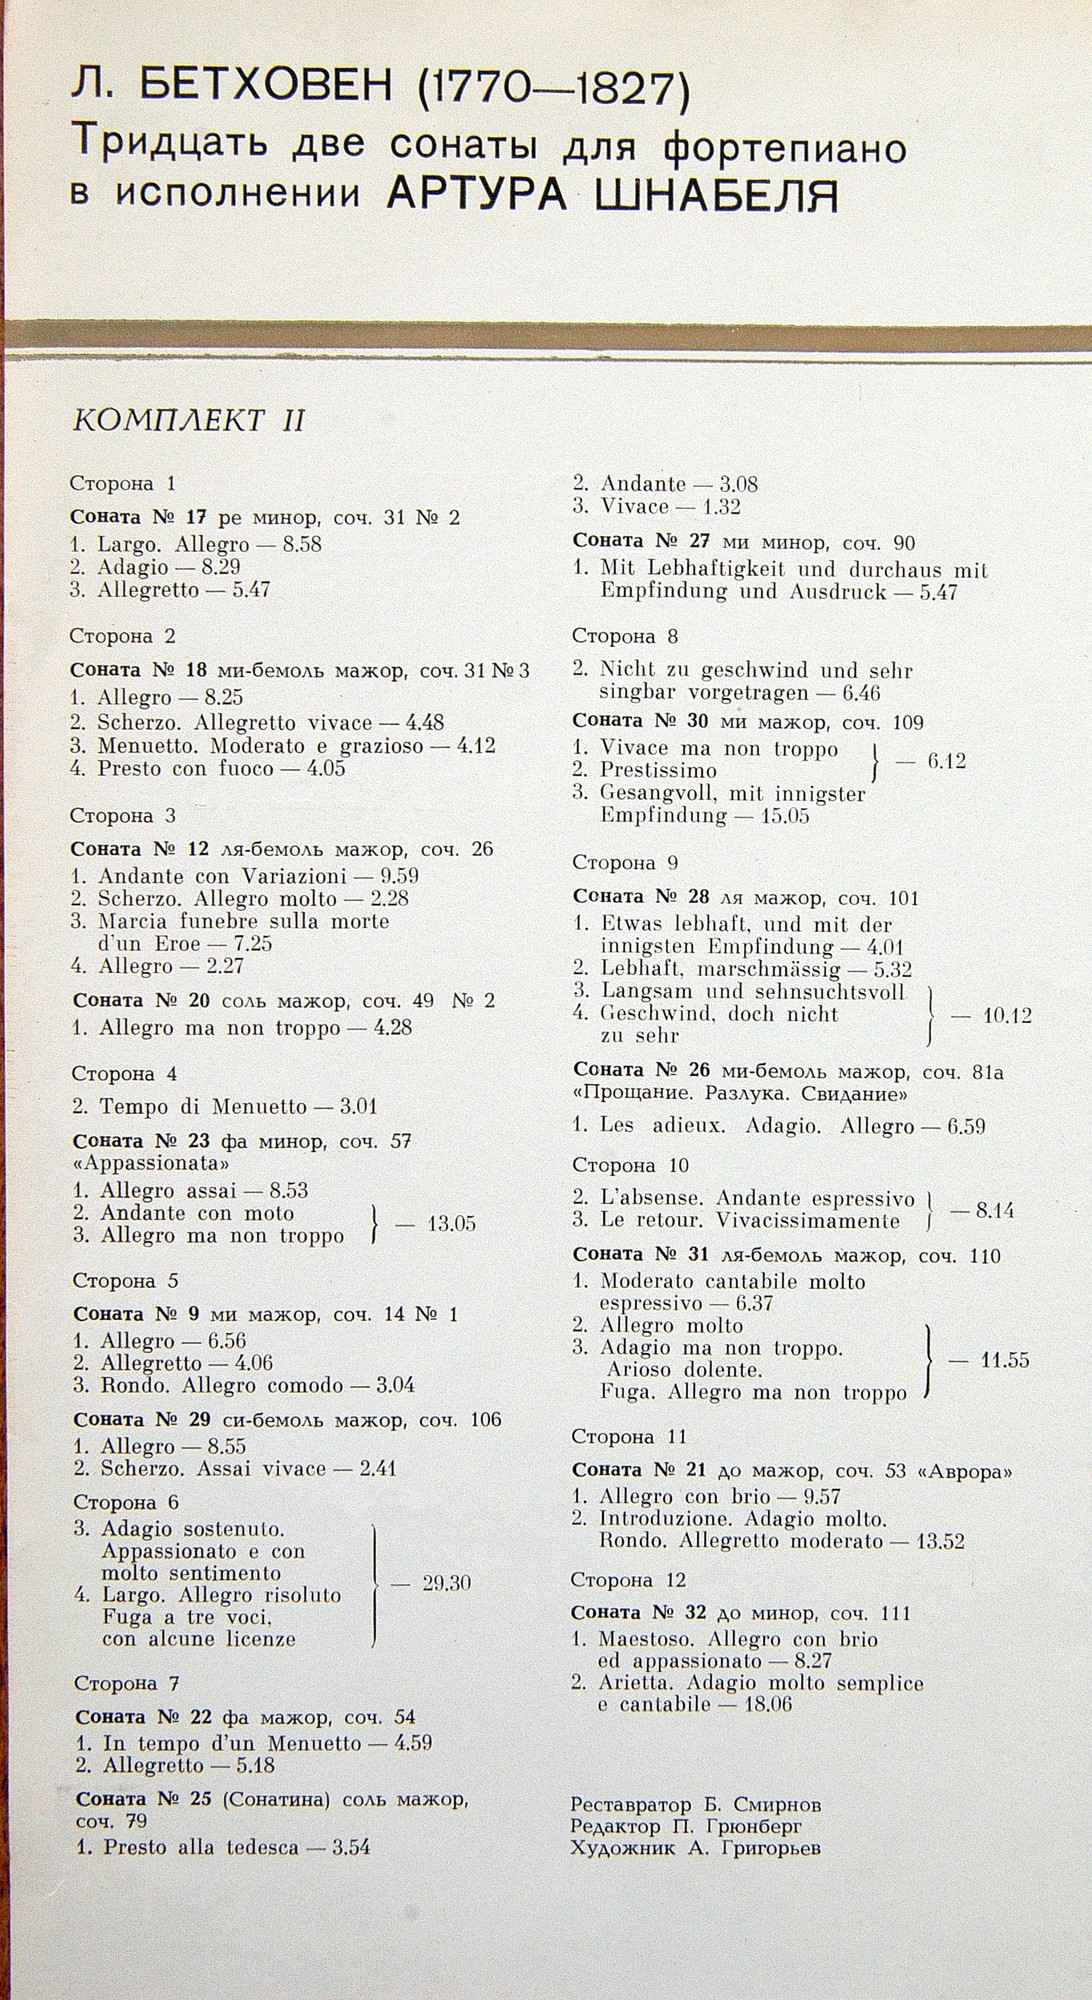 Л. БЕТХОВЕН (1770-1827): 32 Сонаты для Фортепиано. Артур Шнабель (Комплект 2)